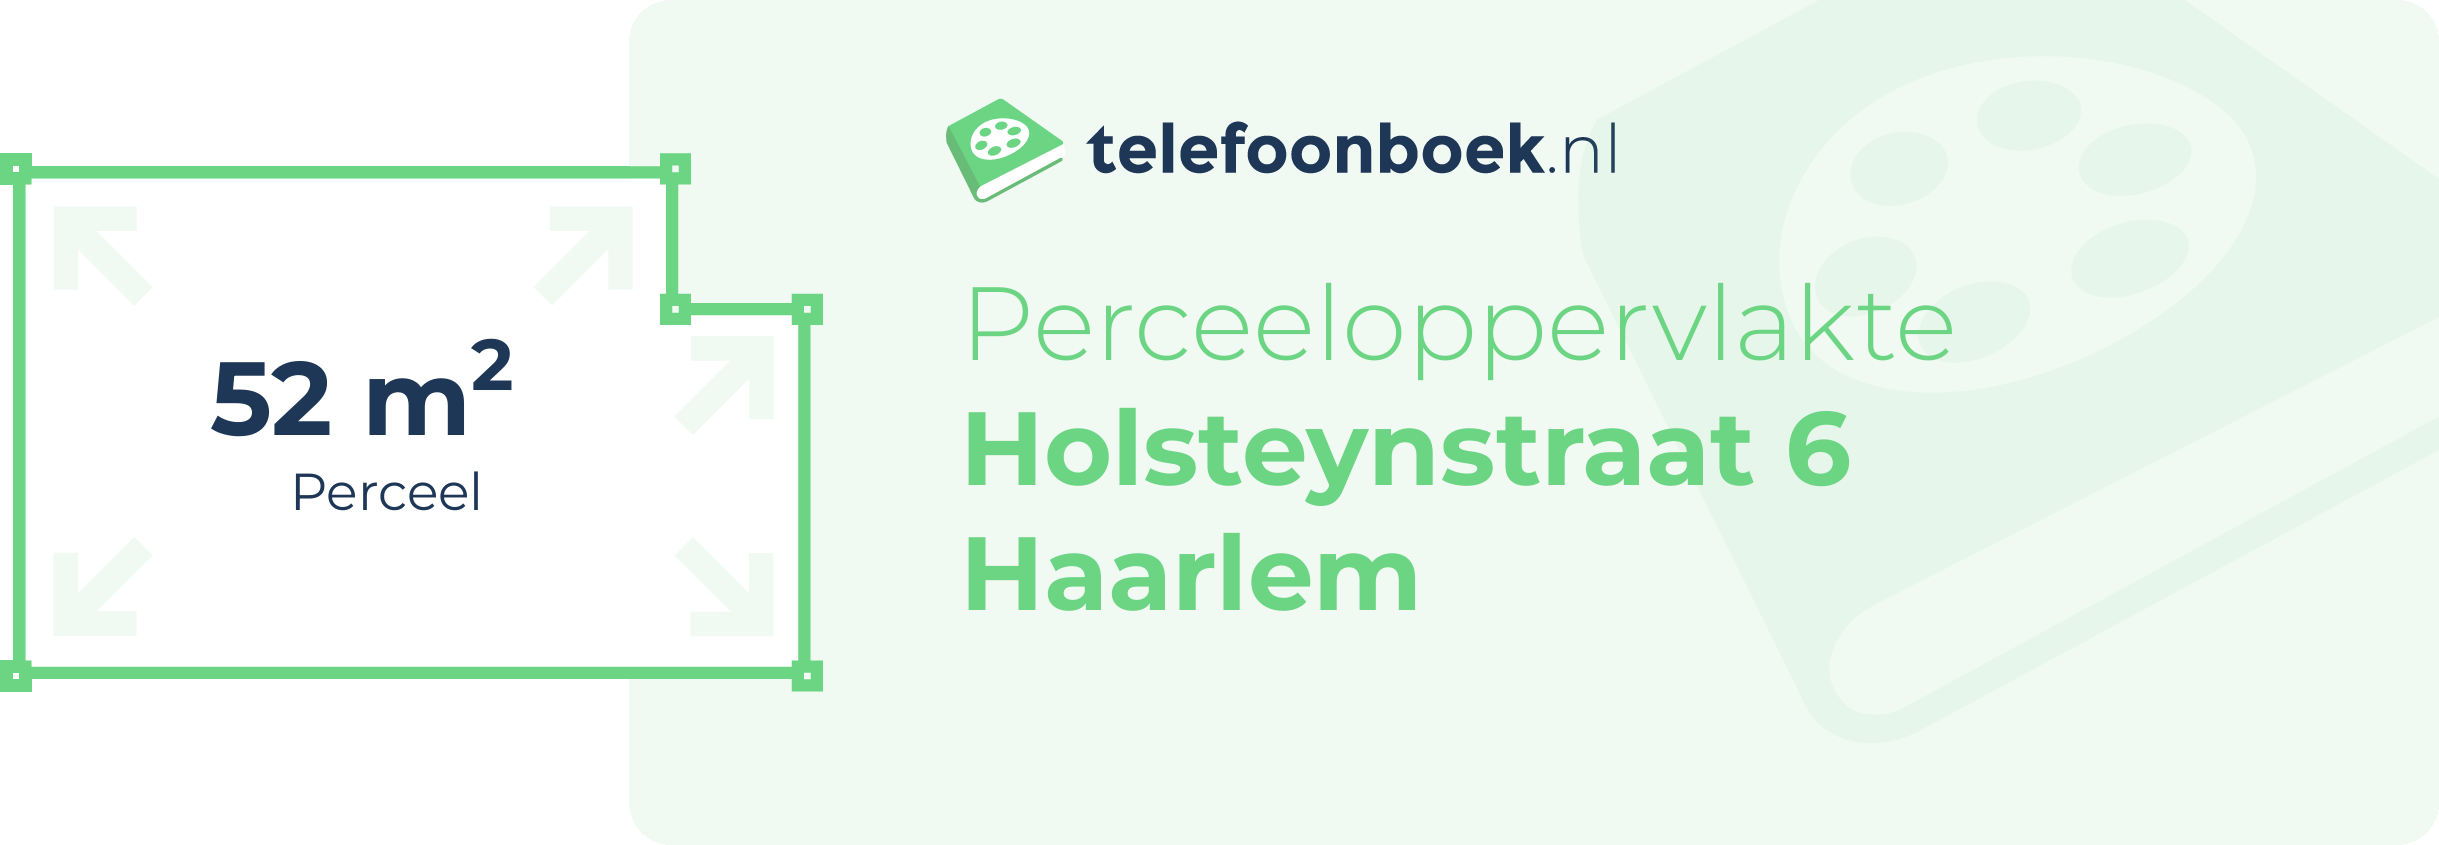 Perceeloppervlakte Holsteynstraat 6 Haarlem